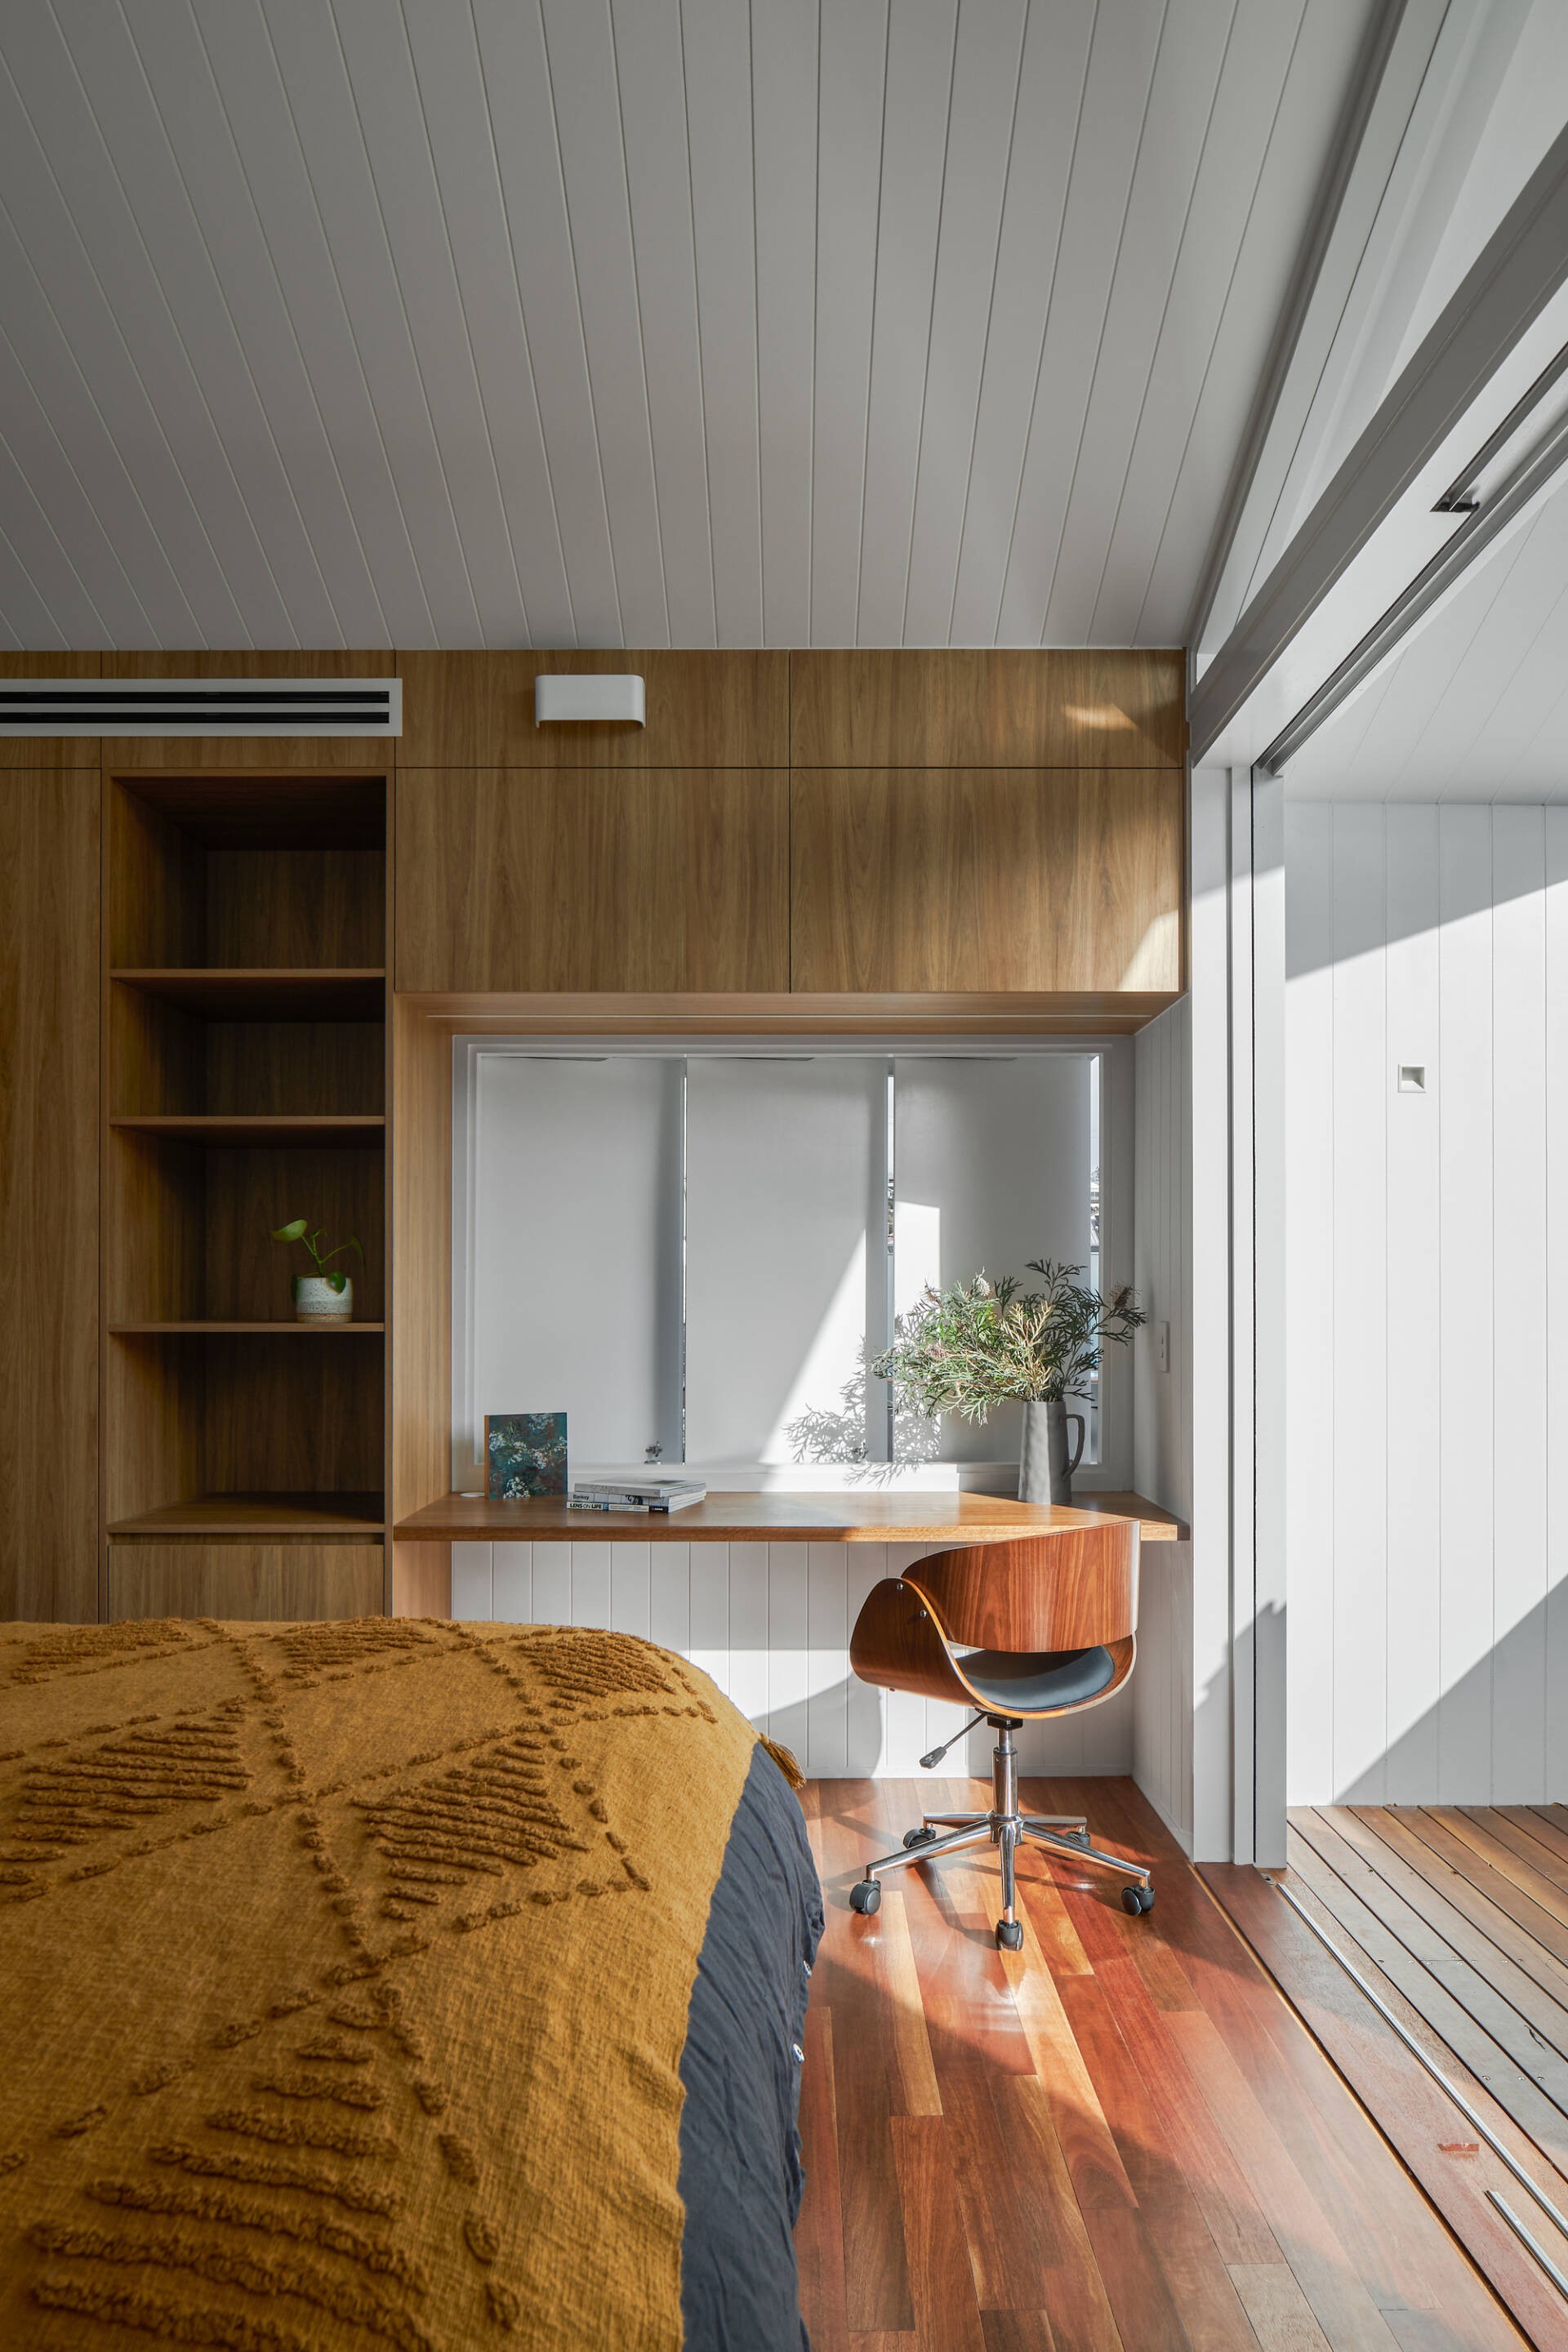 
Phòng ngủ sử dụng vật liệu gỗ làm chủ đạo, kết hợp với tông màu ấm cùng cửa trượt giúp không gian bên trong căn nhà ngập tràn ánh sáng
